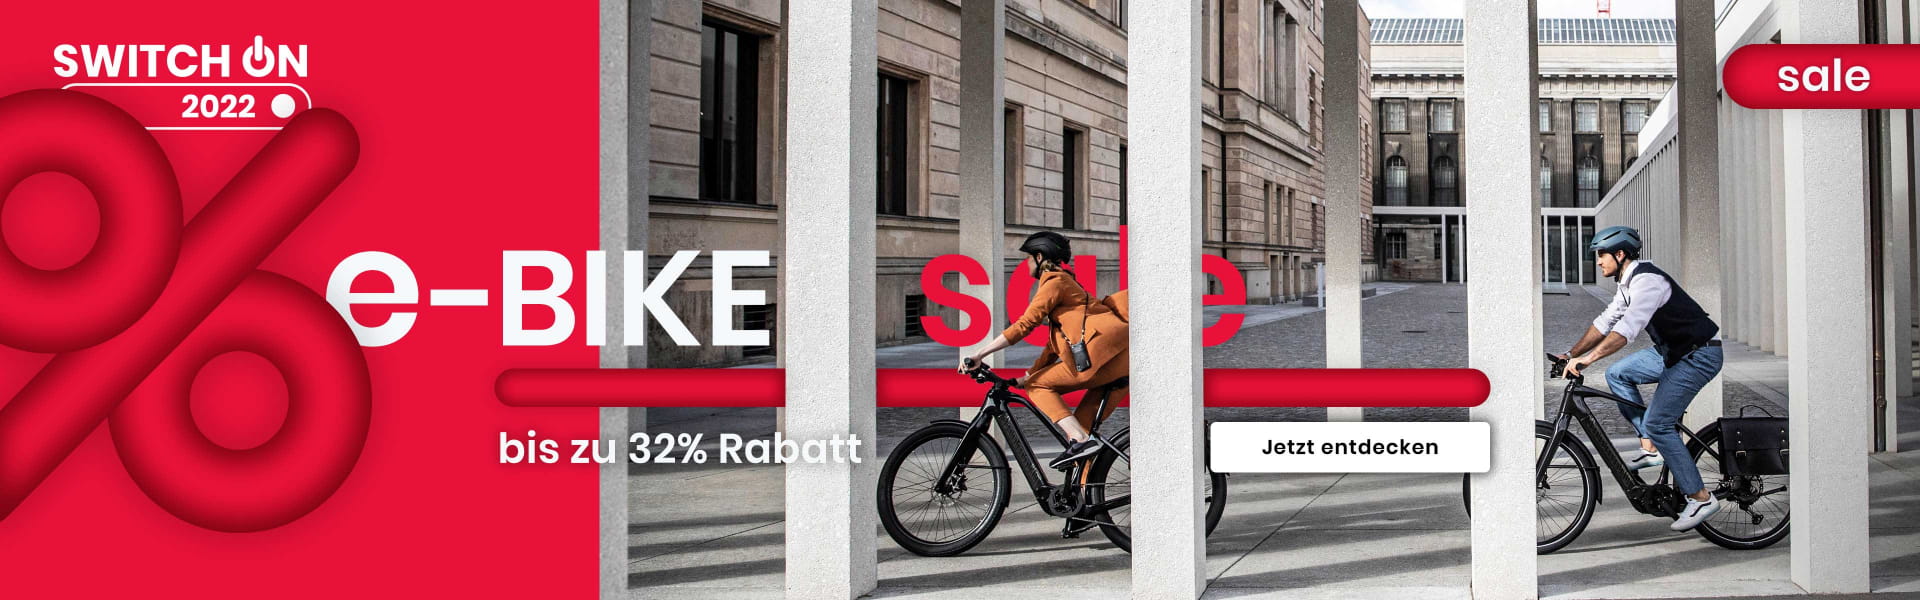 E-Bike Sale